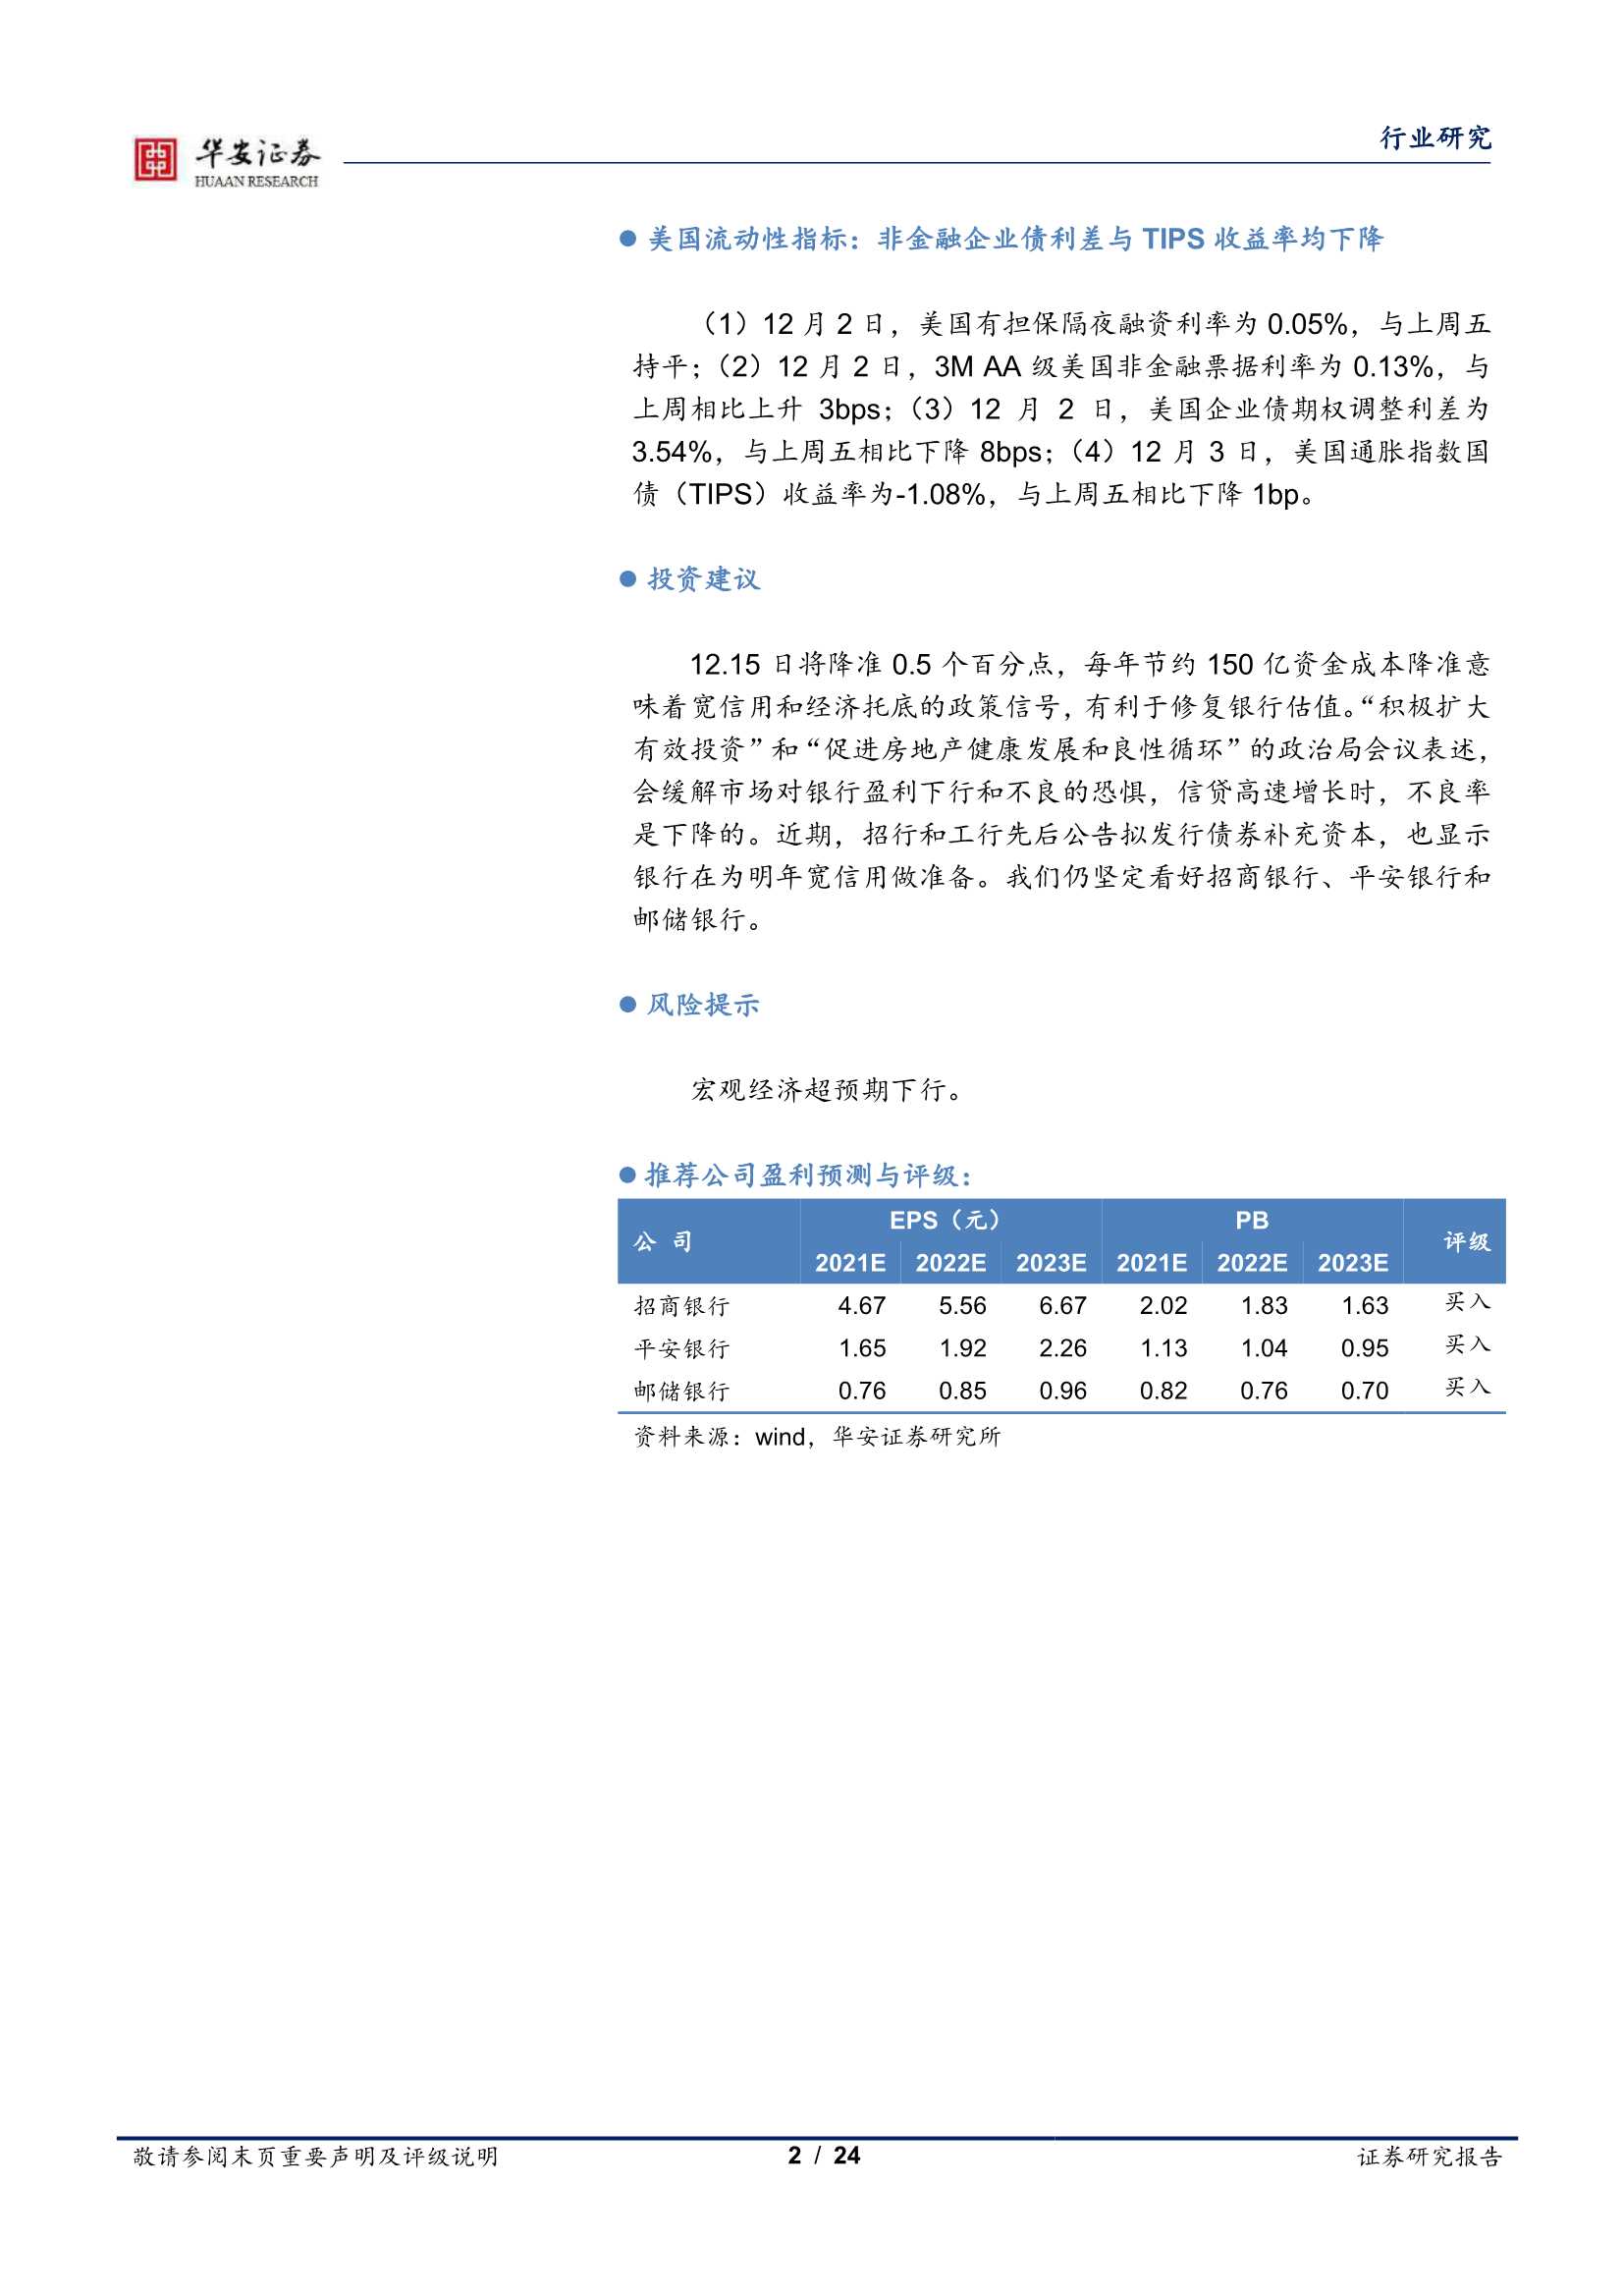 华安证券-银行业：降准释放经济托底信号-20211206-24页